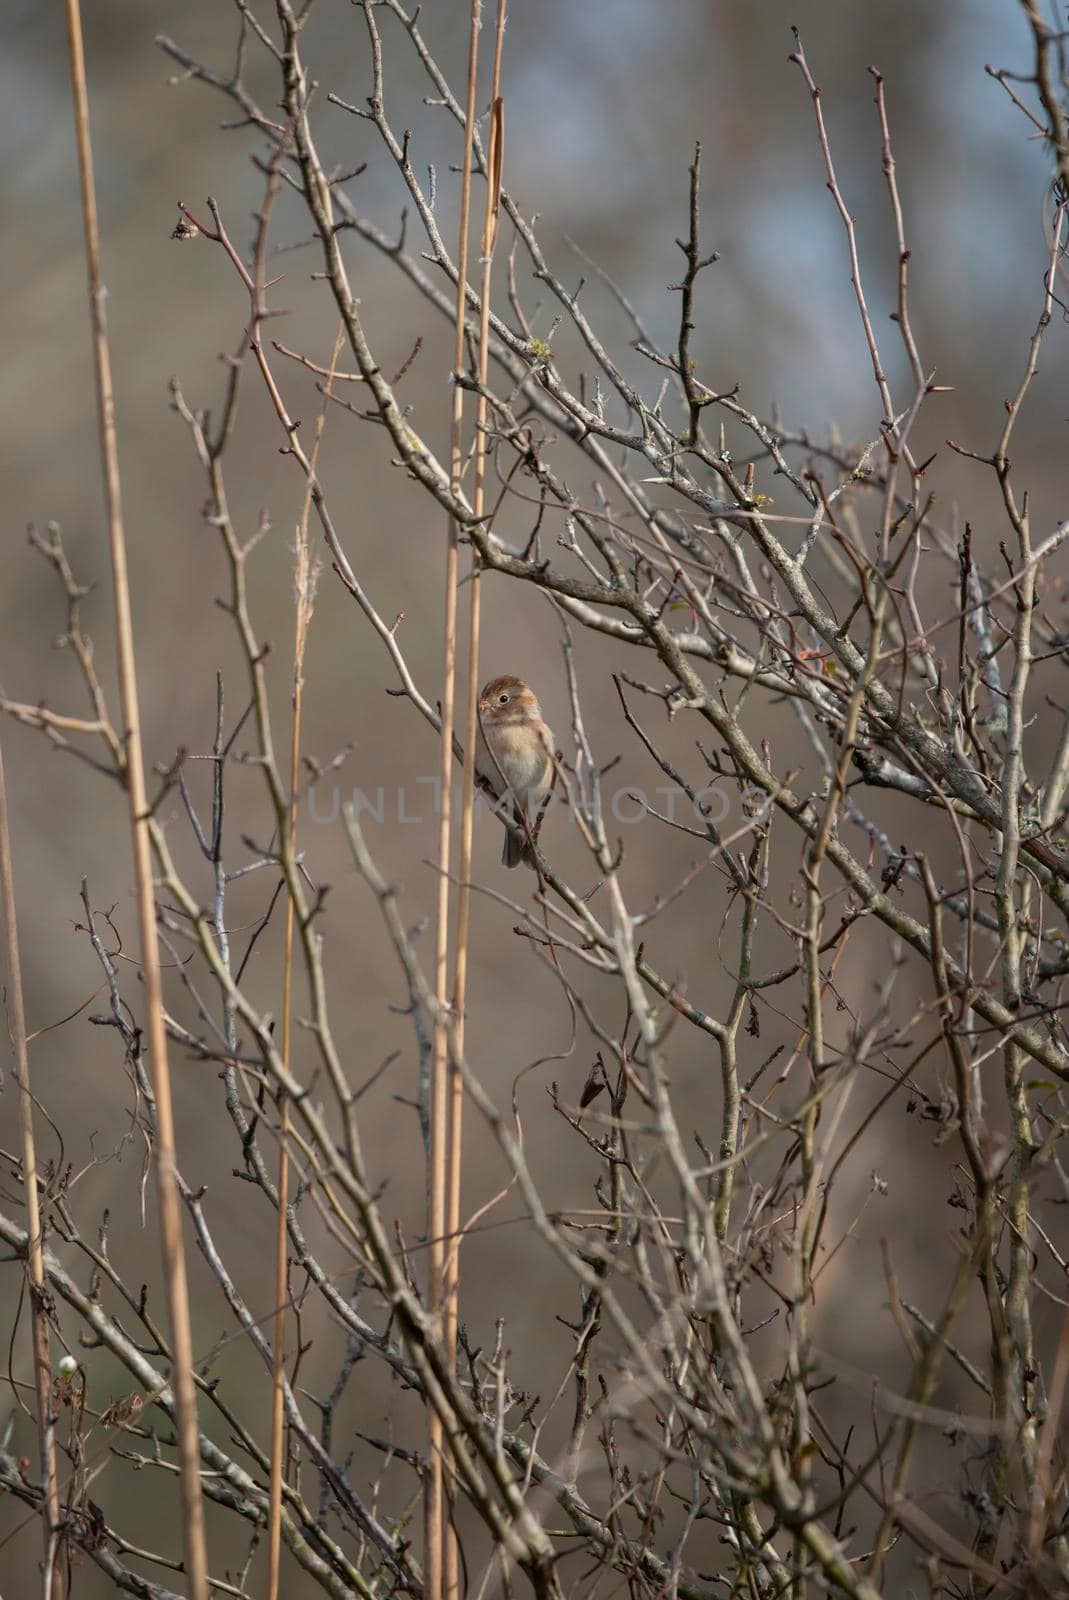 Field Sparrow in a Field by tornado98